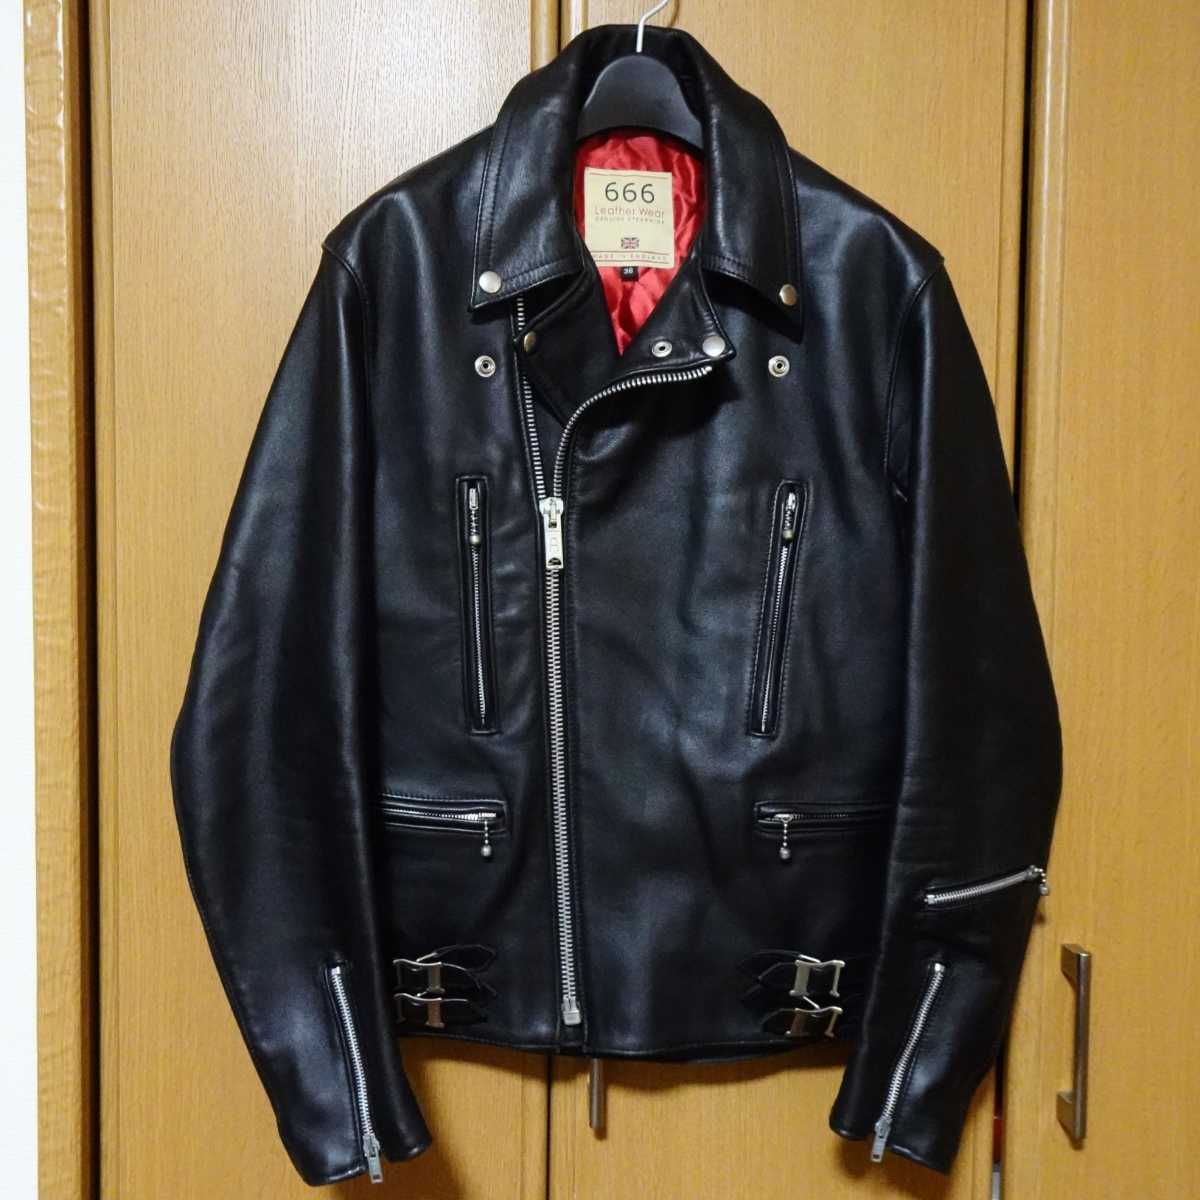 666 Leather wear ダブルライダースジャケット 36 レザー ブラック 黒 ステアハイド 牛革 ルイスレザー ライトニング イングランド製